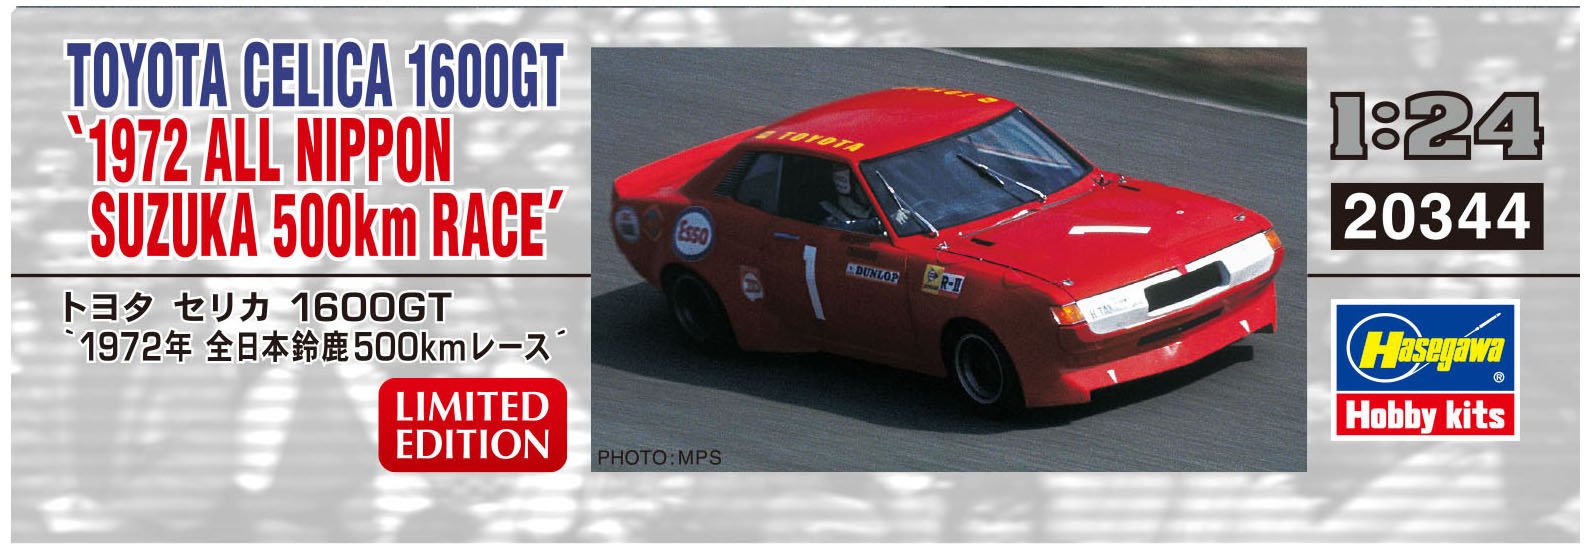 Hasegawa 20344 Toyota Celica 1600Gt 1972 All Nippon Suzuka 500km Rennen, klassisches Auto im Maßstab 1/24